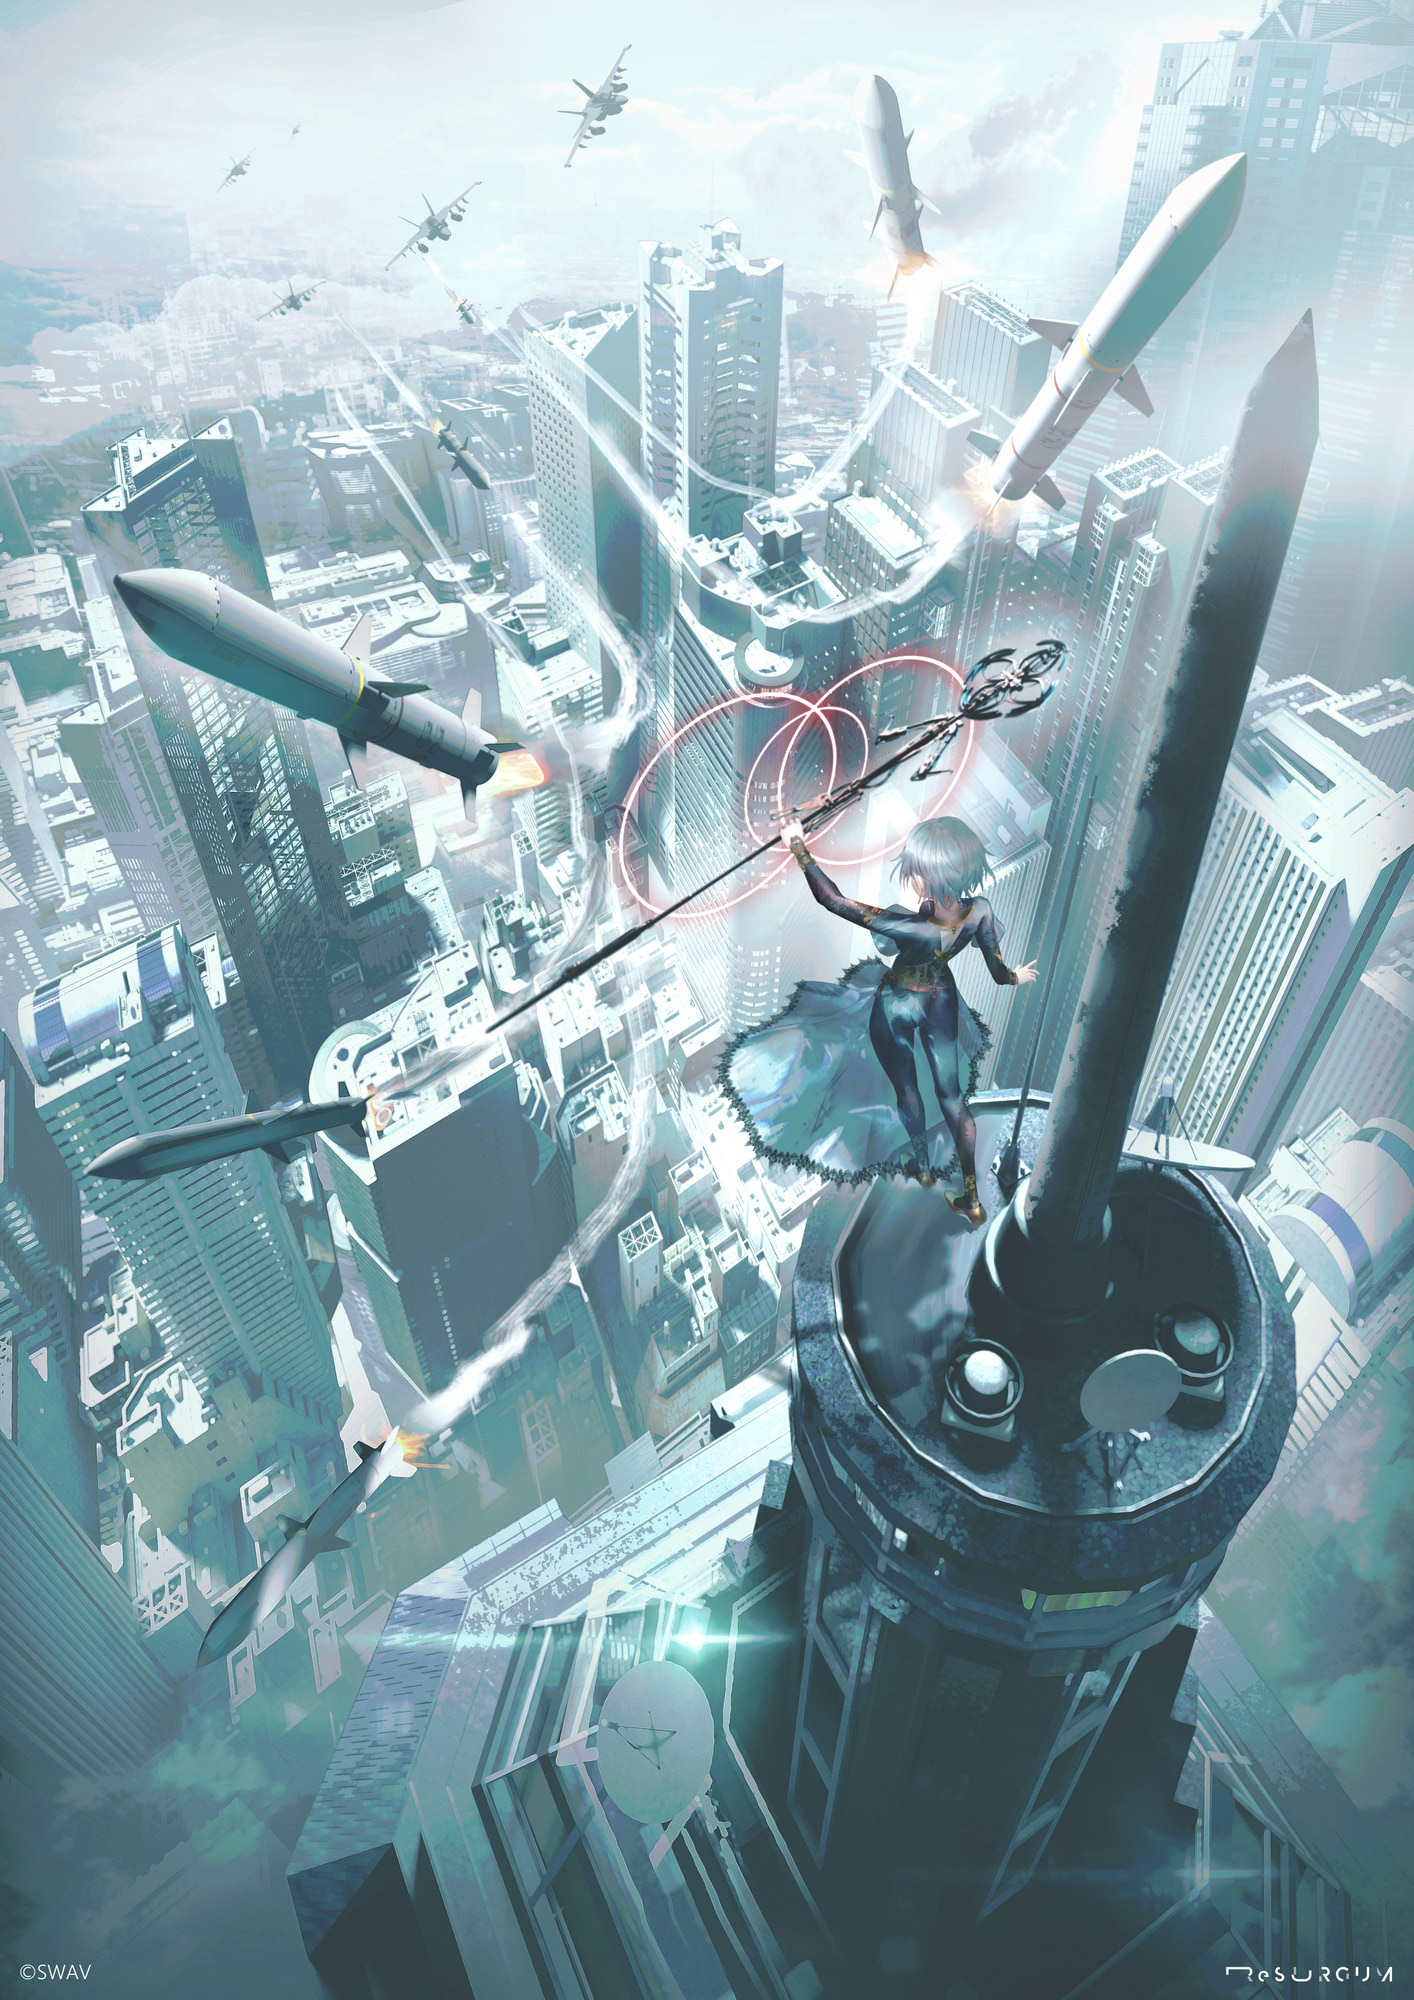 Anime Anime Girls SWAV Artwork Cityscape Jet Fighter Missiles 1414x2000